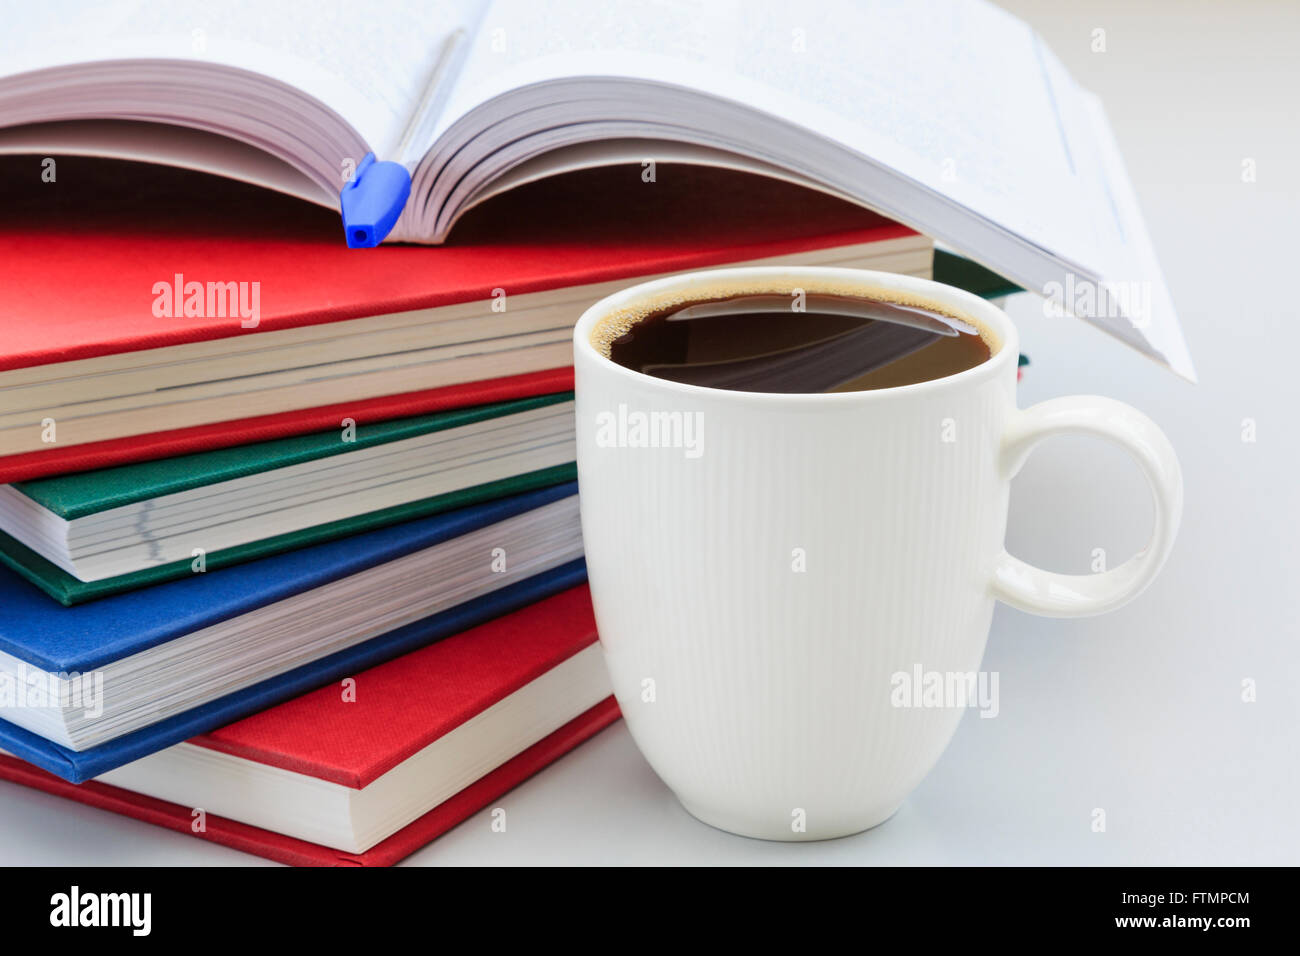 Lo studente lo studio della scena con la pila di libri su una scrivania con una tazza di forte caffè nero per aiutare a rimanere sveglio per la revisione di studiare. Inghilterra Regno Unito Gran Bretagna Foto Stock